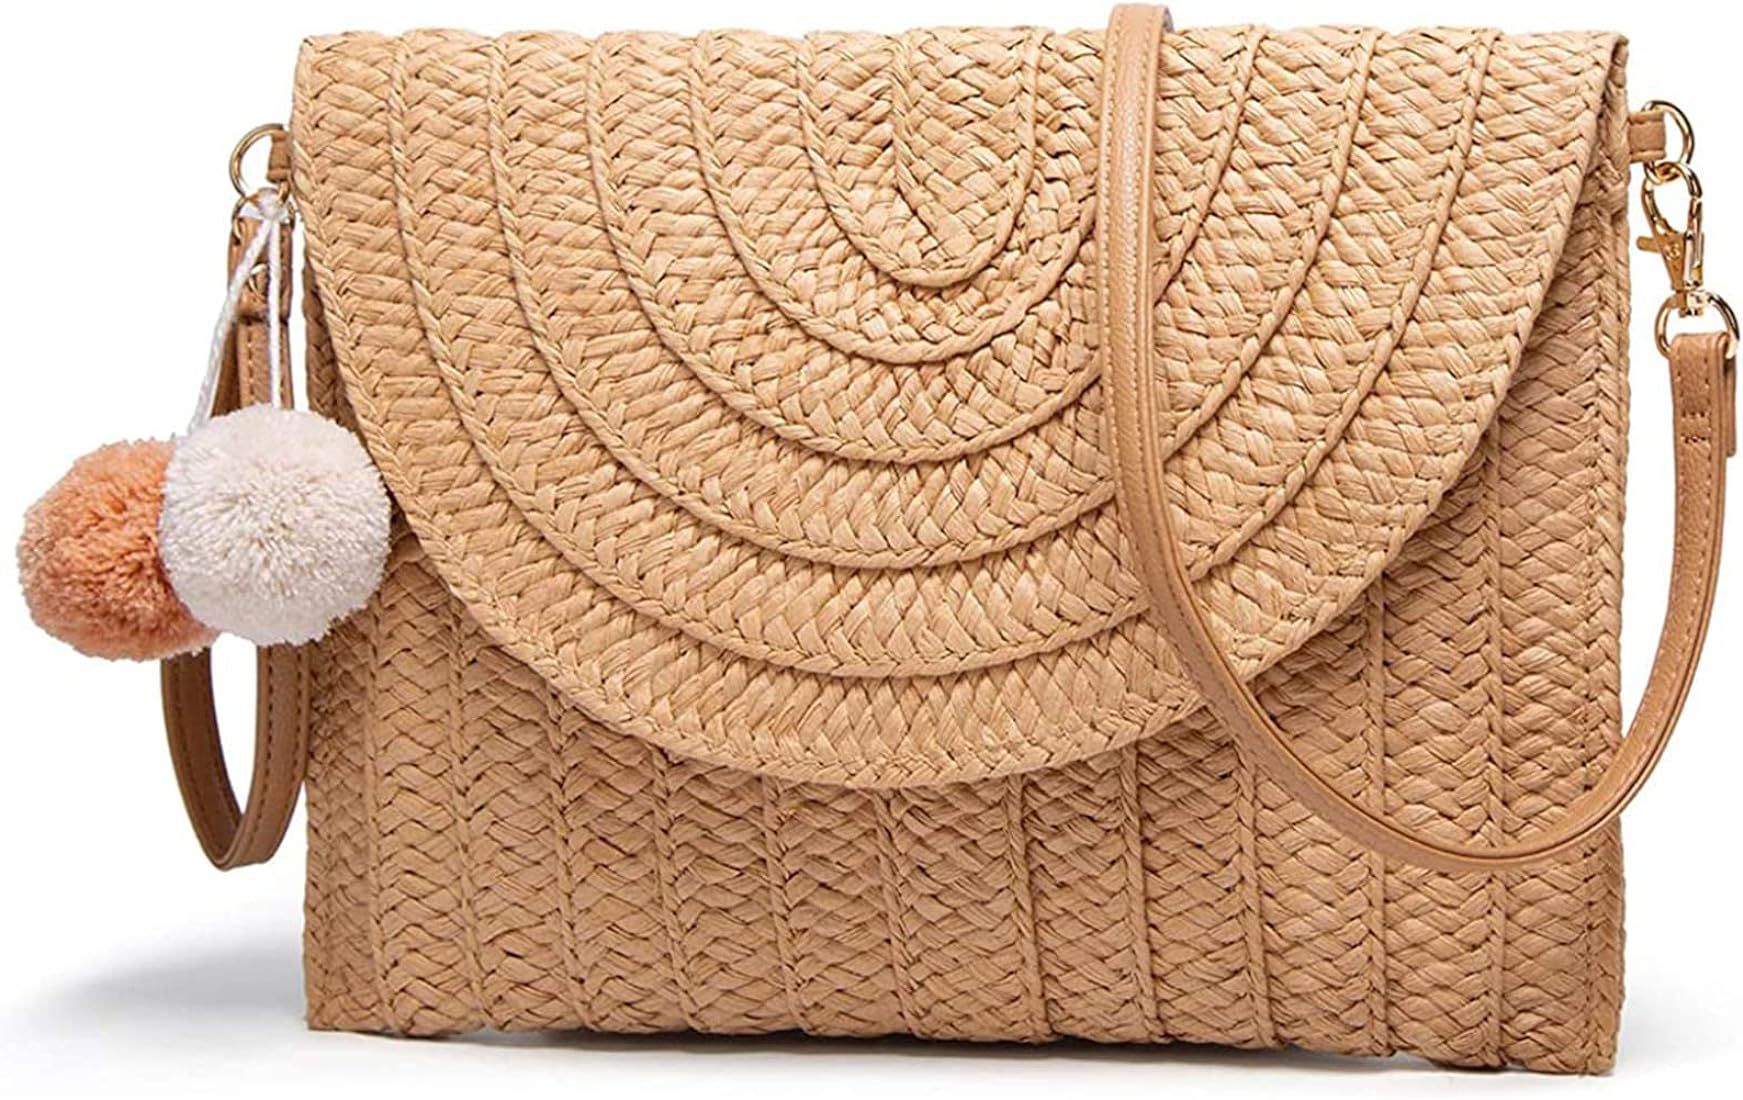 Raffia Woven Wicker Clutch Bag Straw Purse For Girls Summer Beach Crossbody Handbags | Amazon (US)